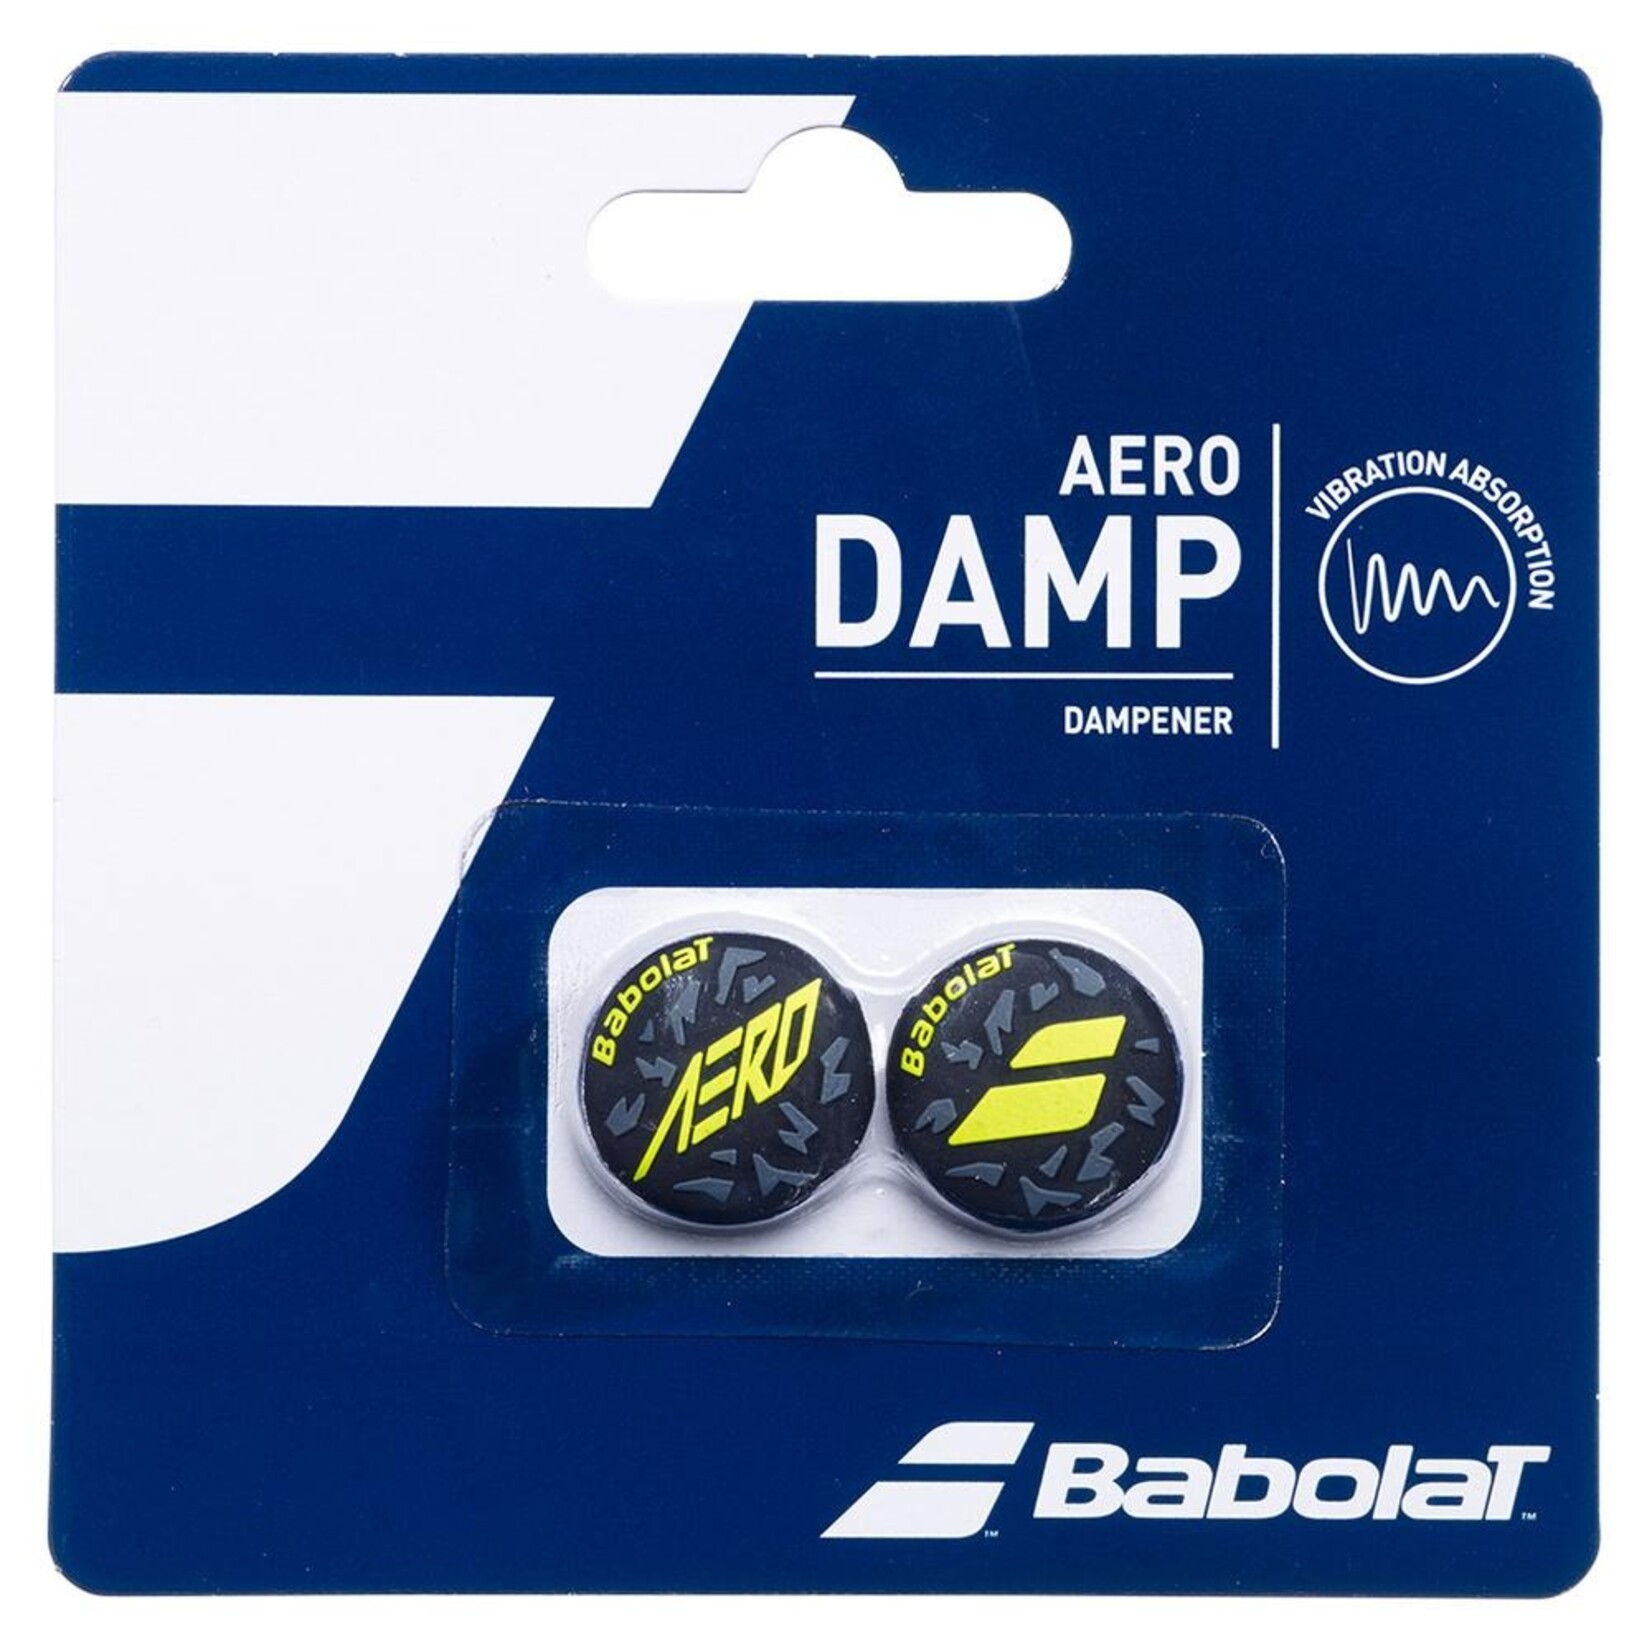 BABOLAT AERO DAMP DAMPENER - 2 PACK